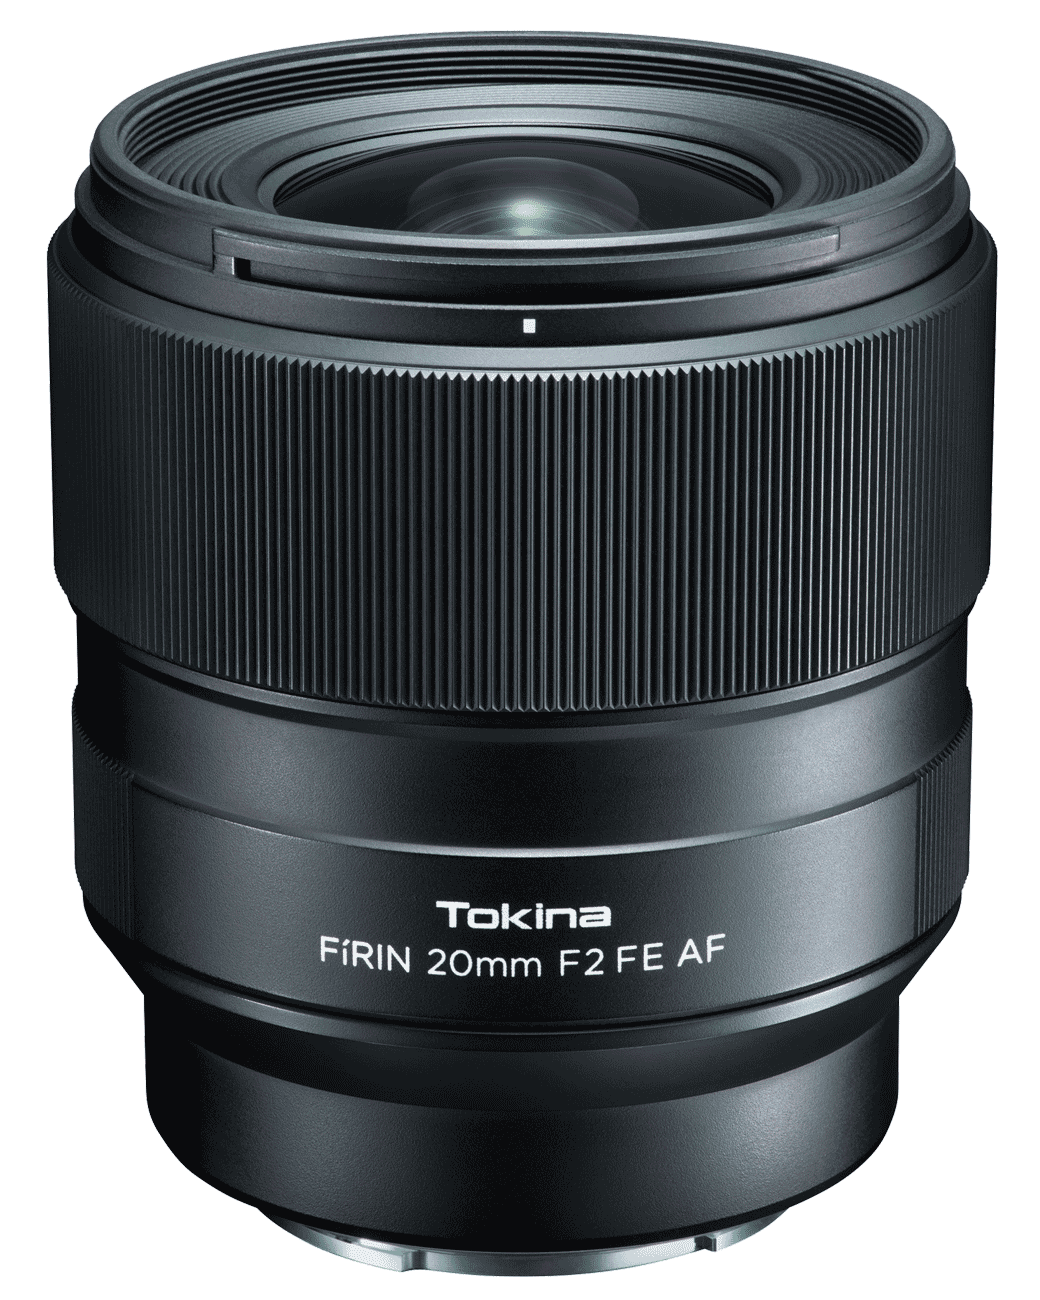 Объектив Tokina FIRIN 20mm F2 FE AF для Sony